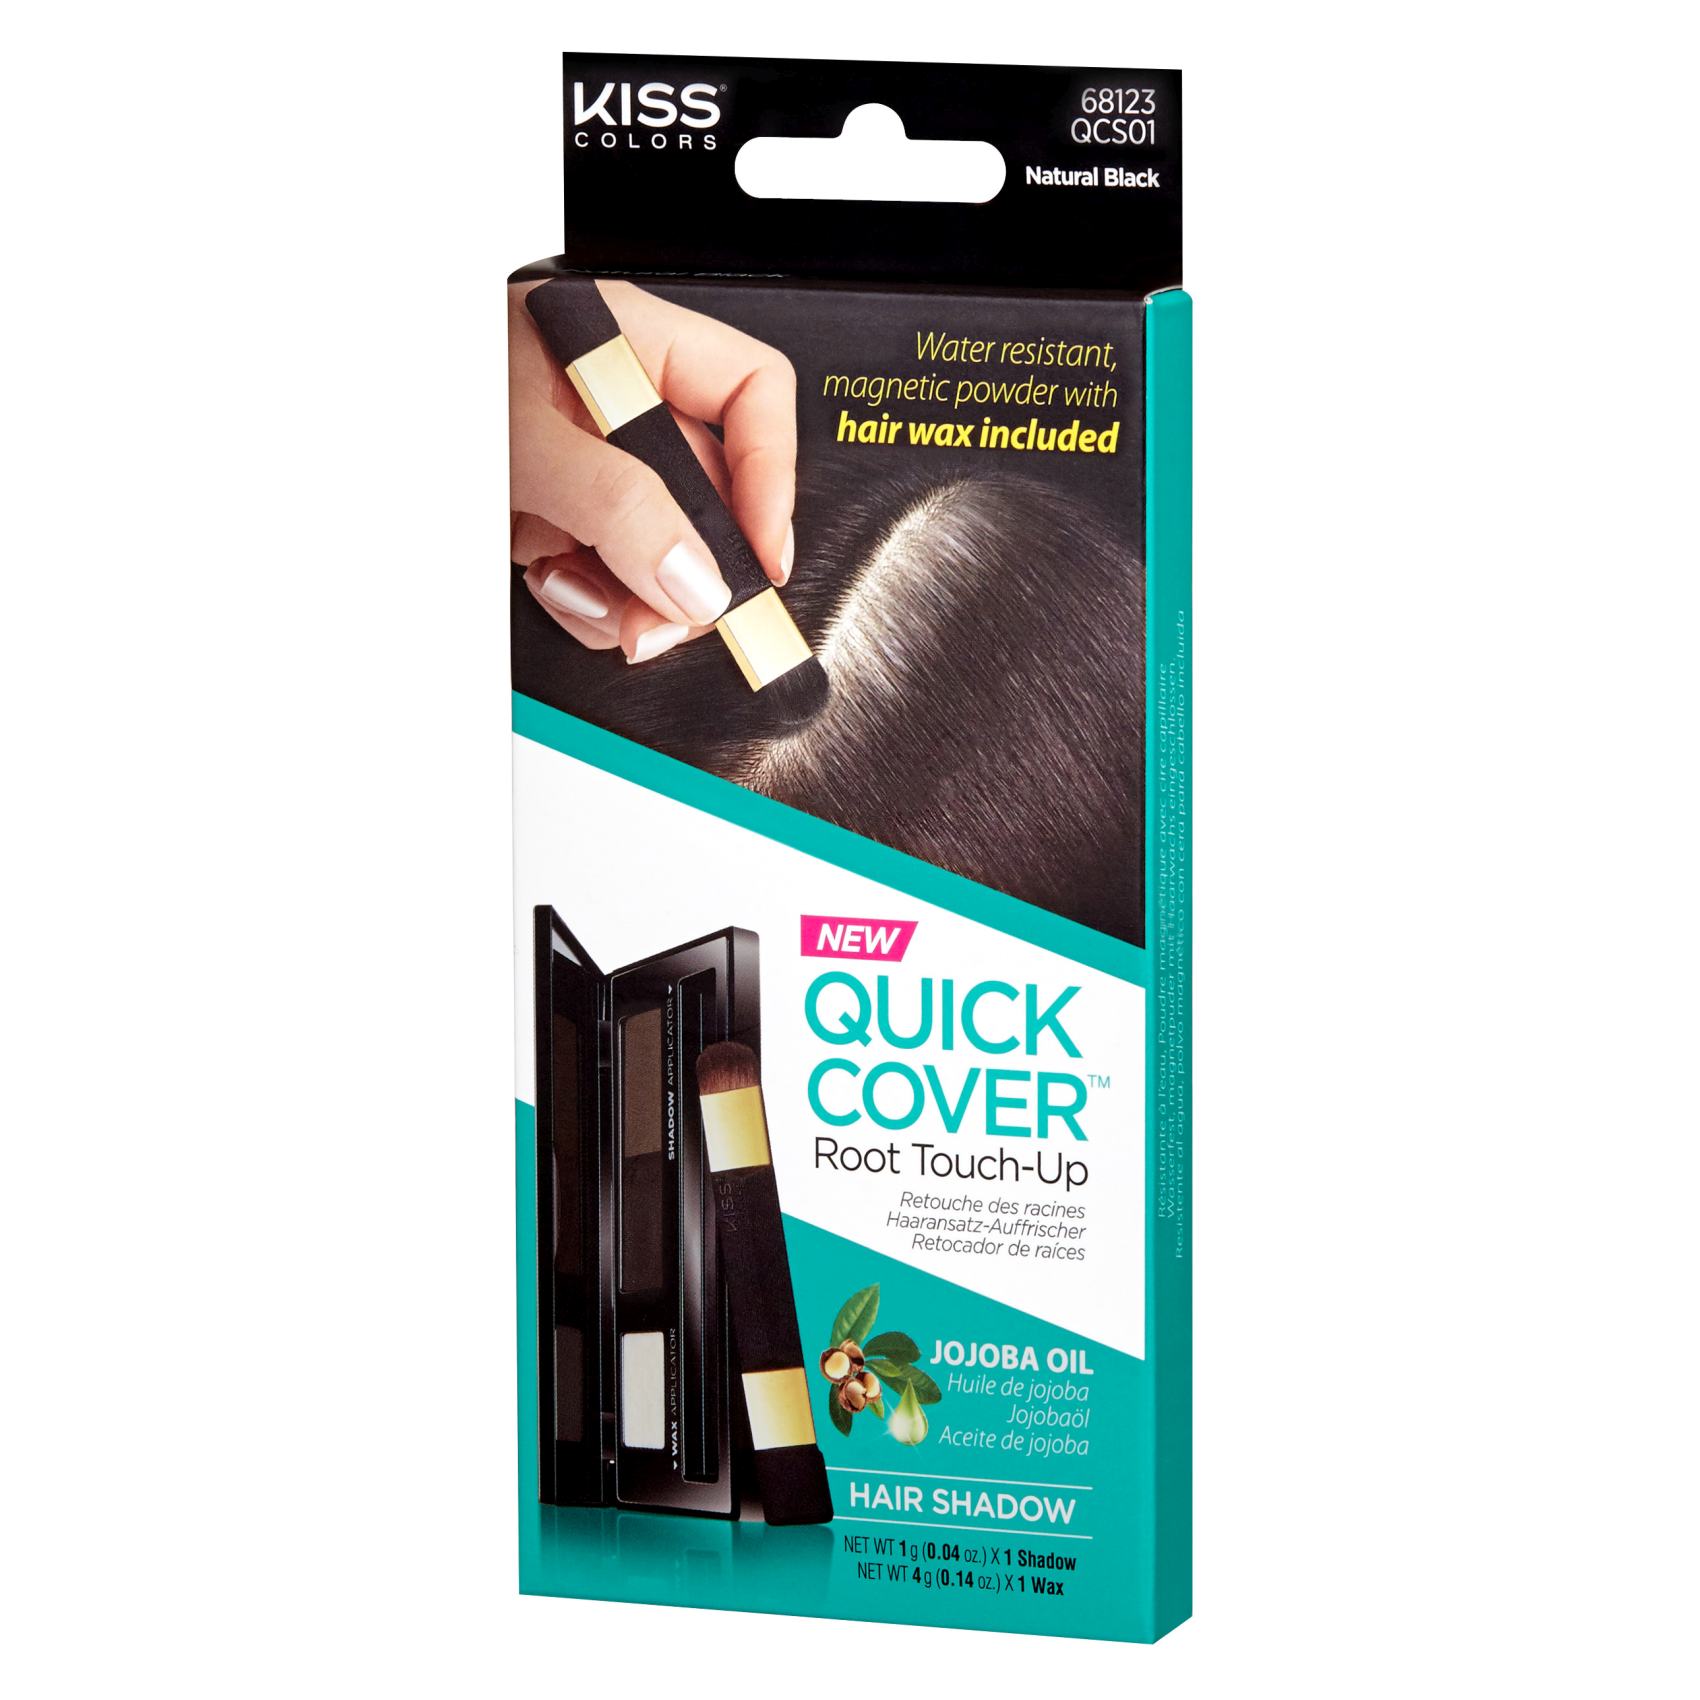 كيس كويك كوفر لوحة ظلال لتلوين وتغطية شيب الشعر مؤقتا 5 غرام - باللون أسود طبيعي.